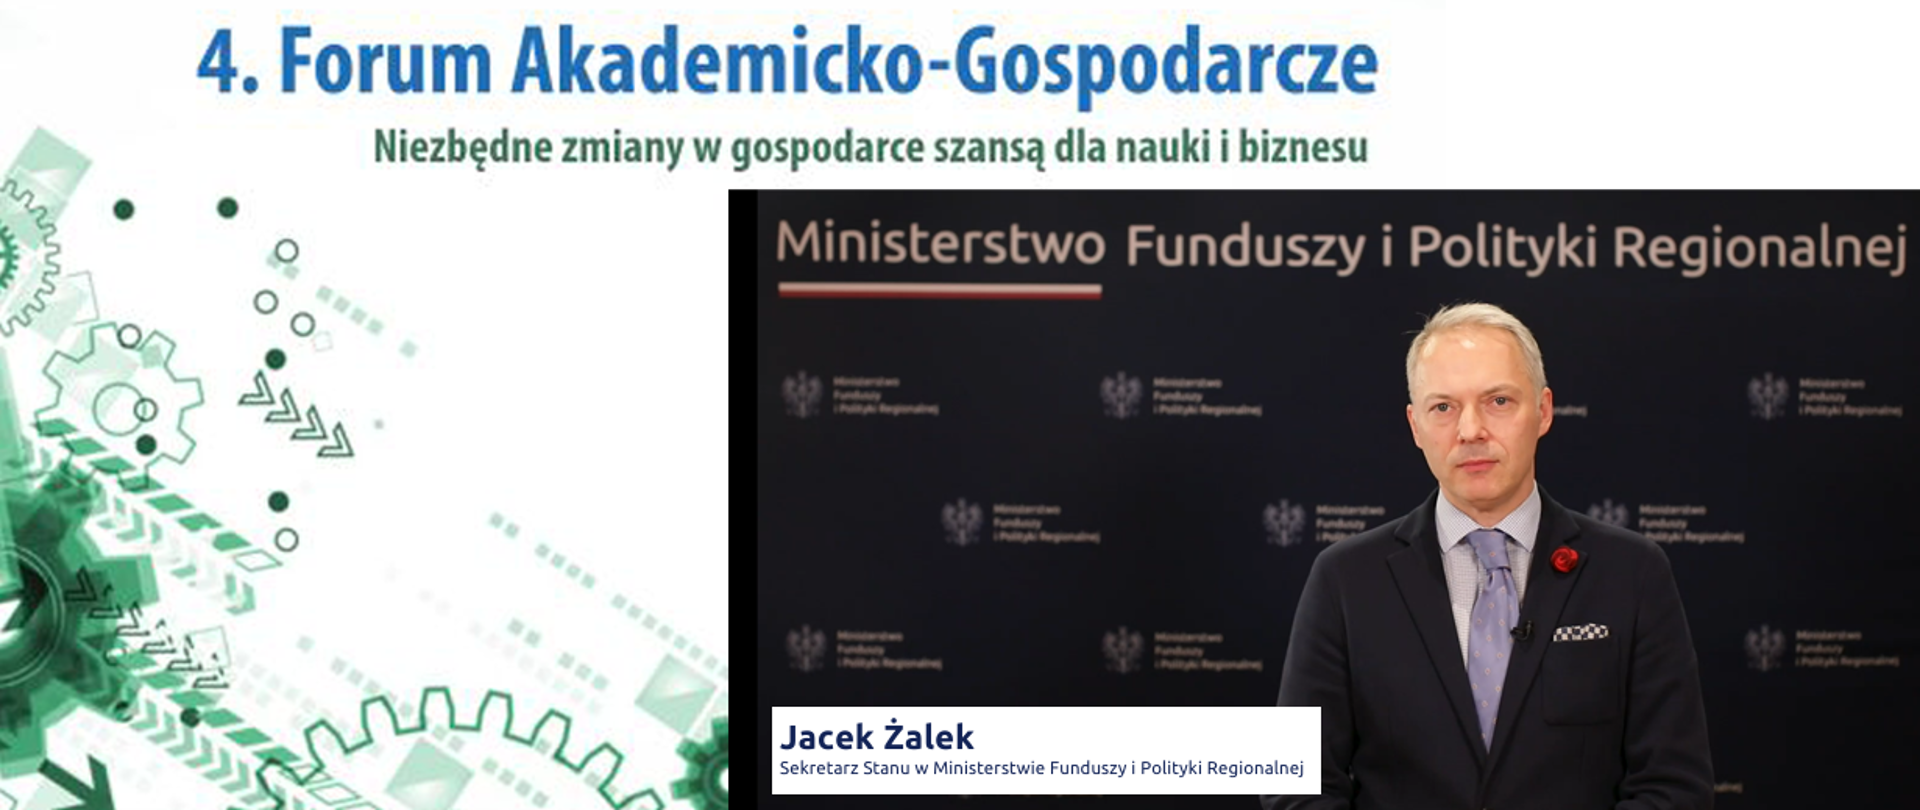 Na zdjęciu na tle ścianki stoi wiceminister Jacek Żalek. Powyżej napis 4. Forum Akademicko-Gospodarcze.